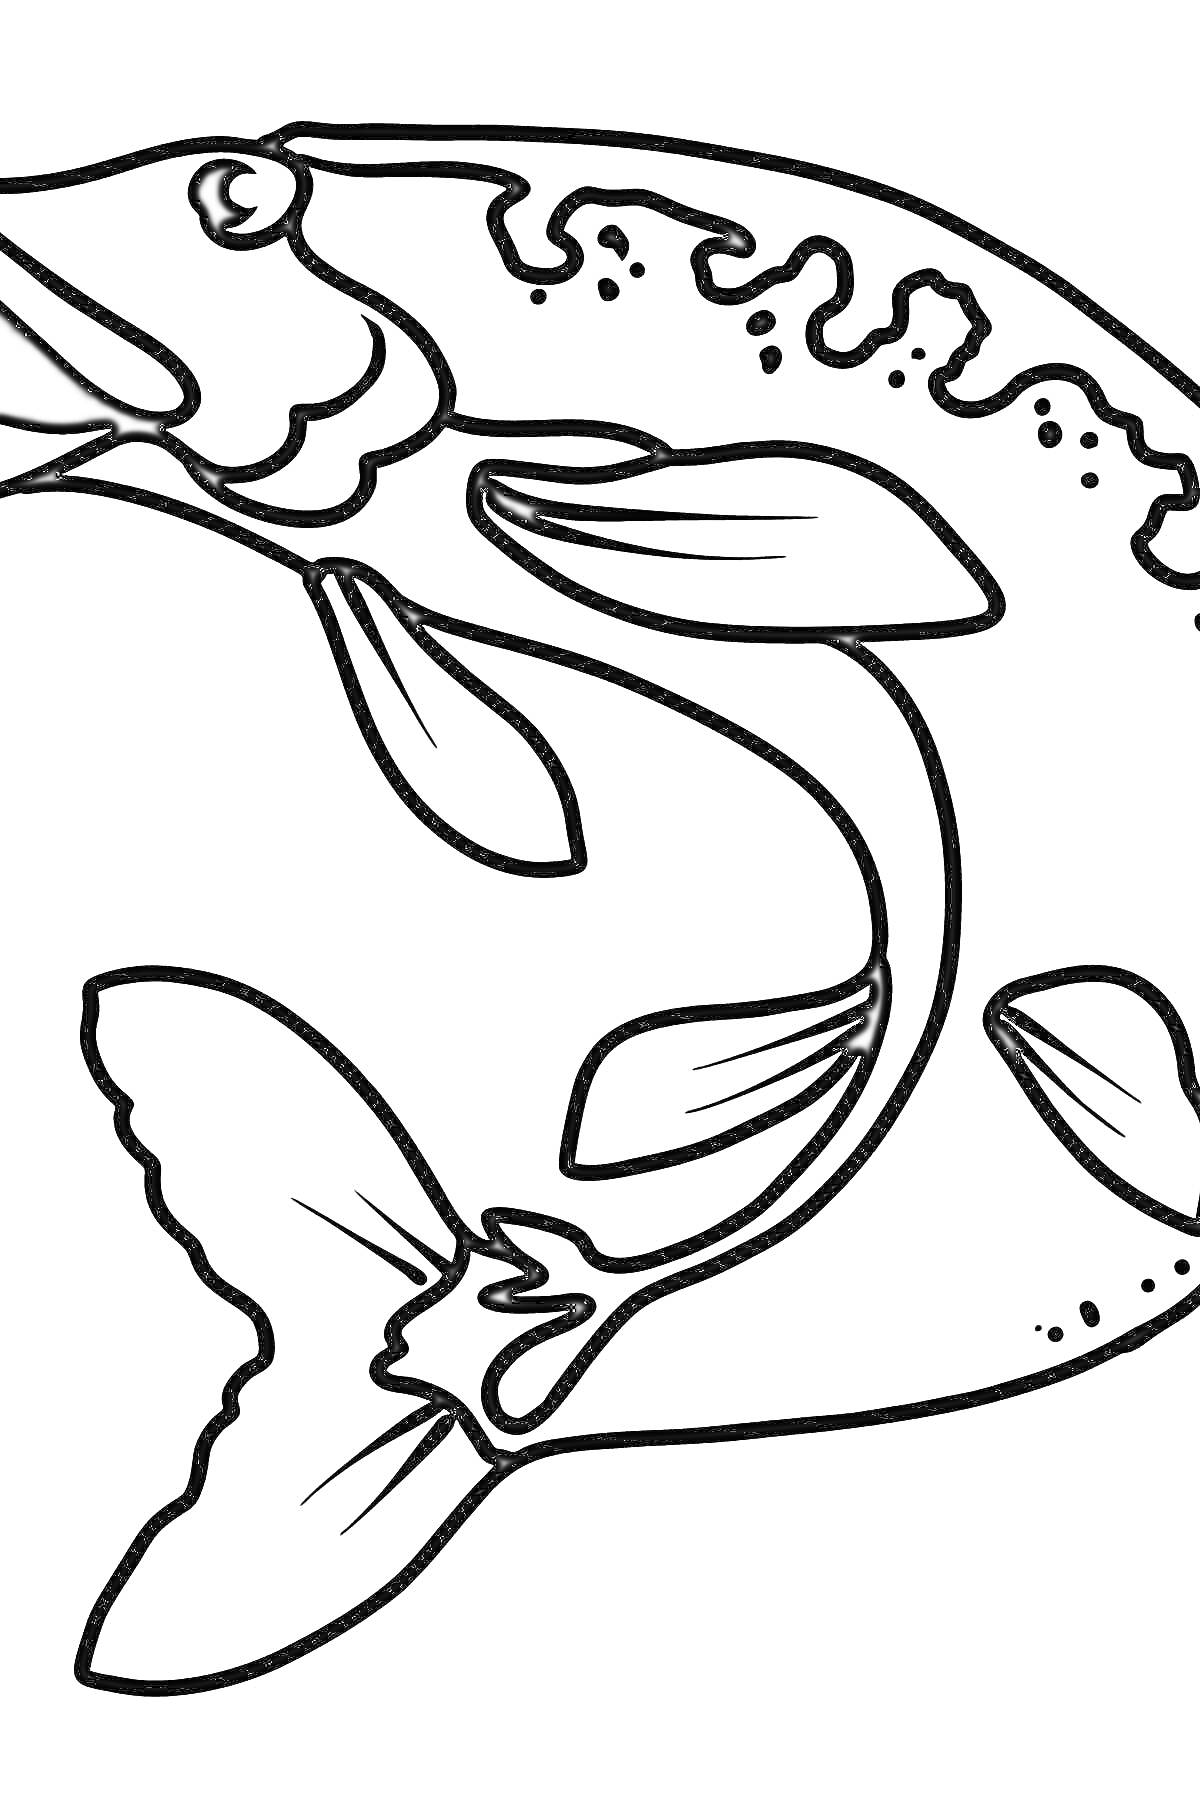 Раскраска Раскраска щука с крупным перечнем плавников и узорами на спине